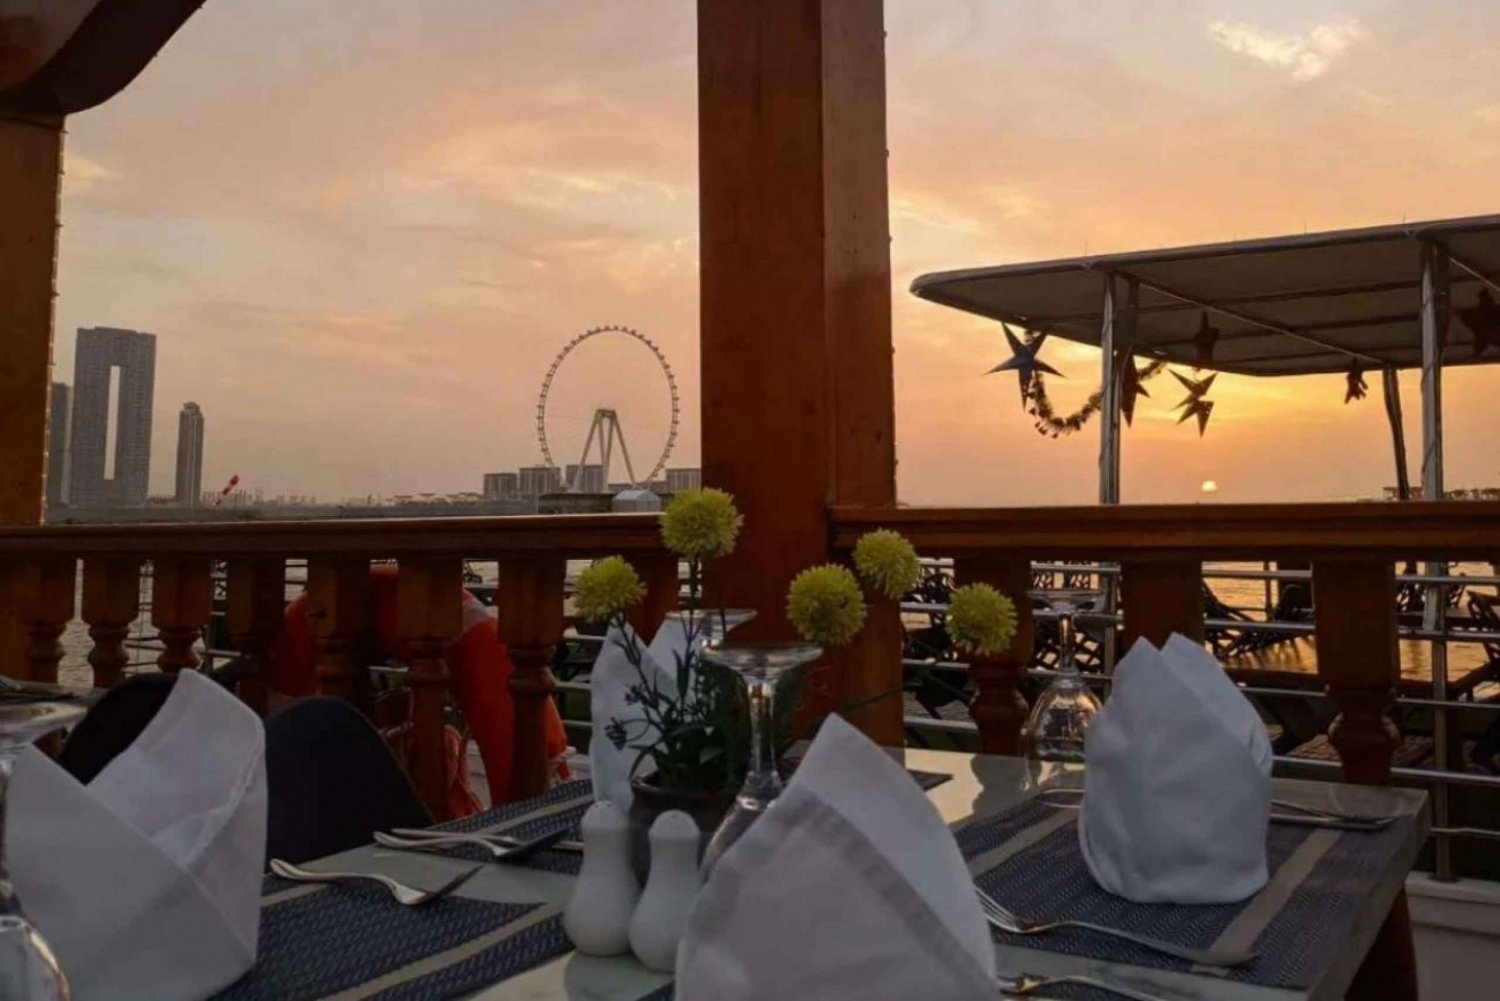 Dubai: Cruzeiro com jantar no Marina Dhow com traslado particular